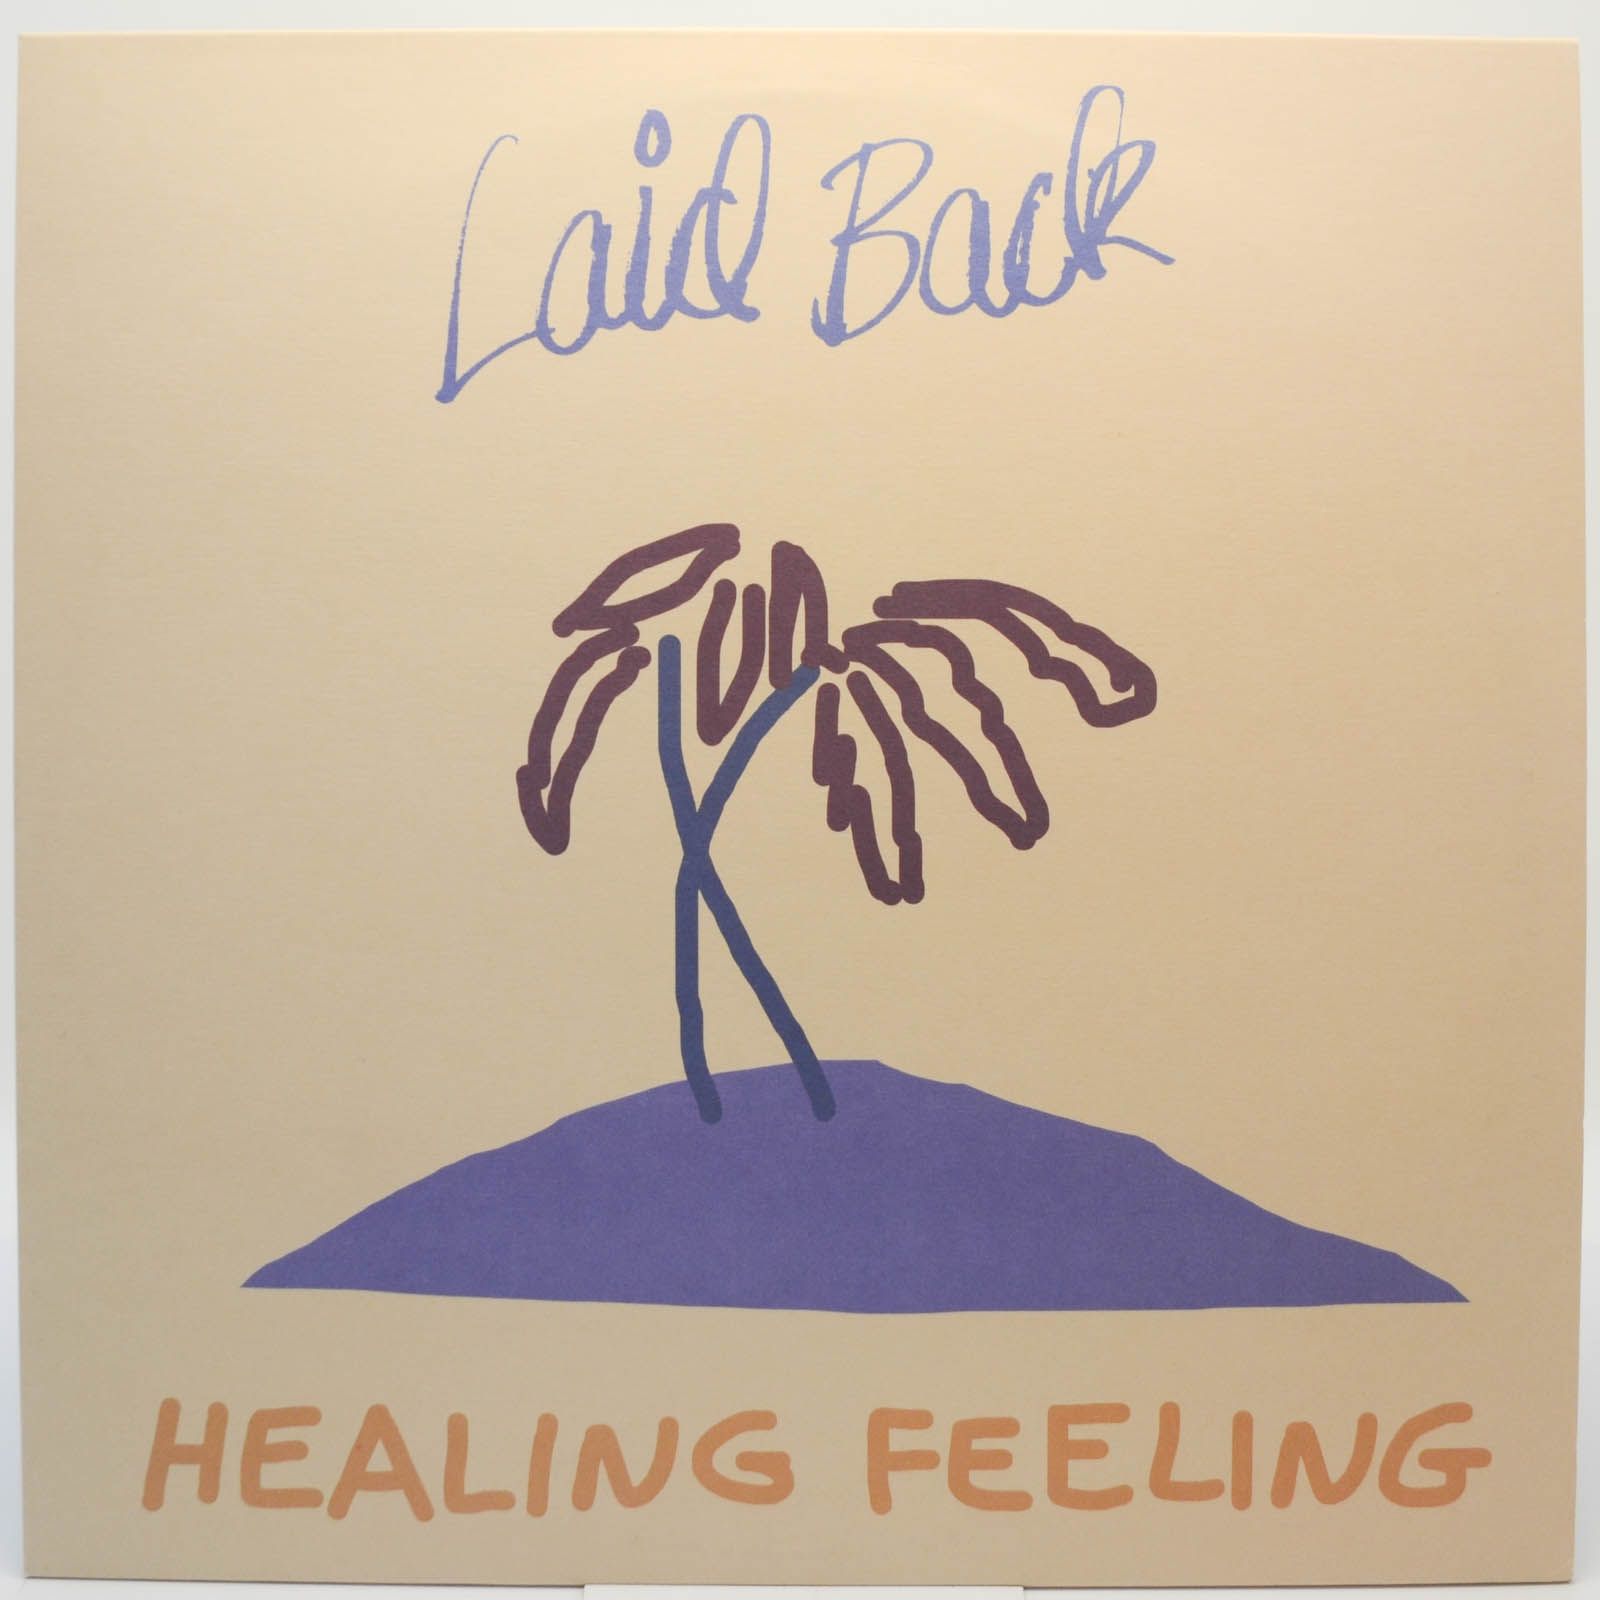 Laid Back — Healing Feeling (Denmark), 2019